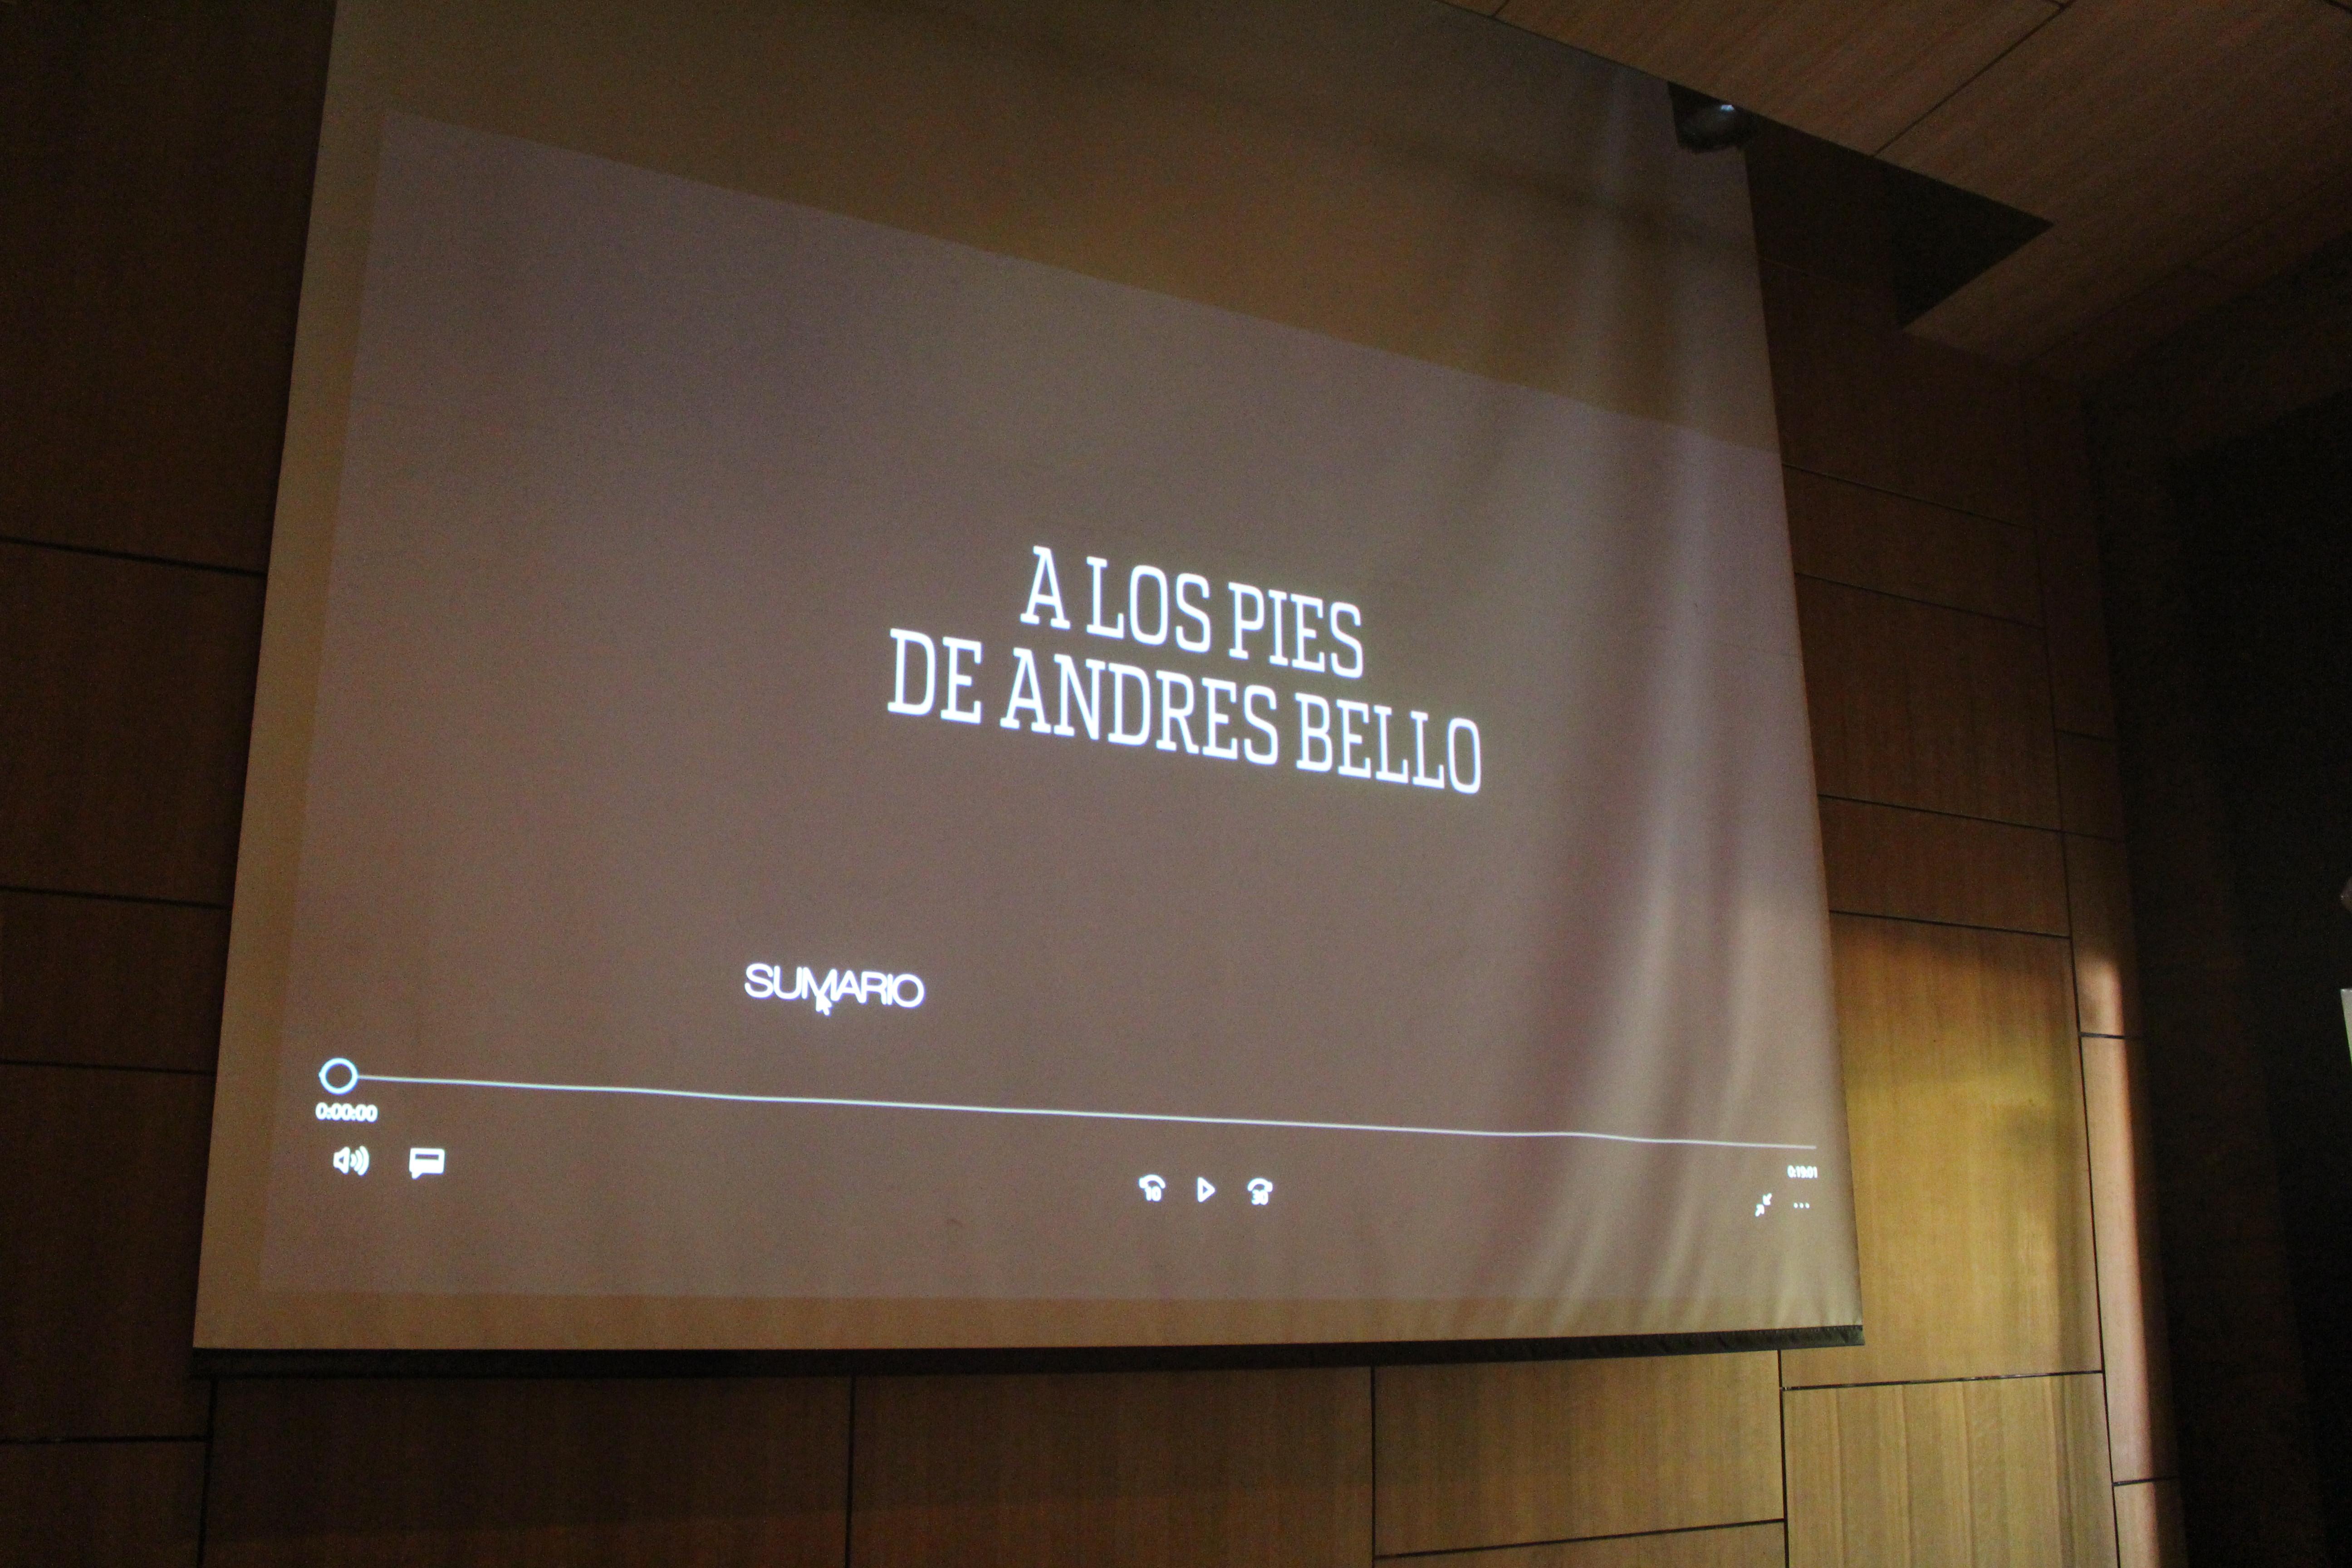 El documental aborda los sumarios realizados a estudiantes de Geografía de la Universidad de Chile del año 1974.